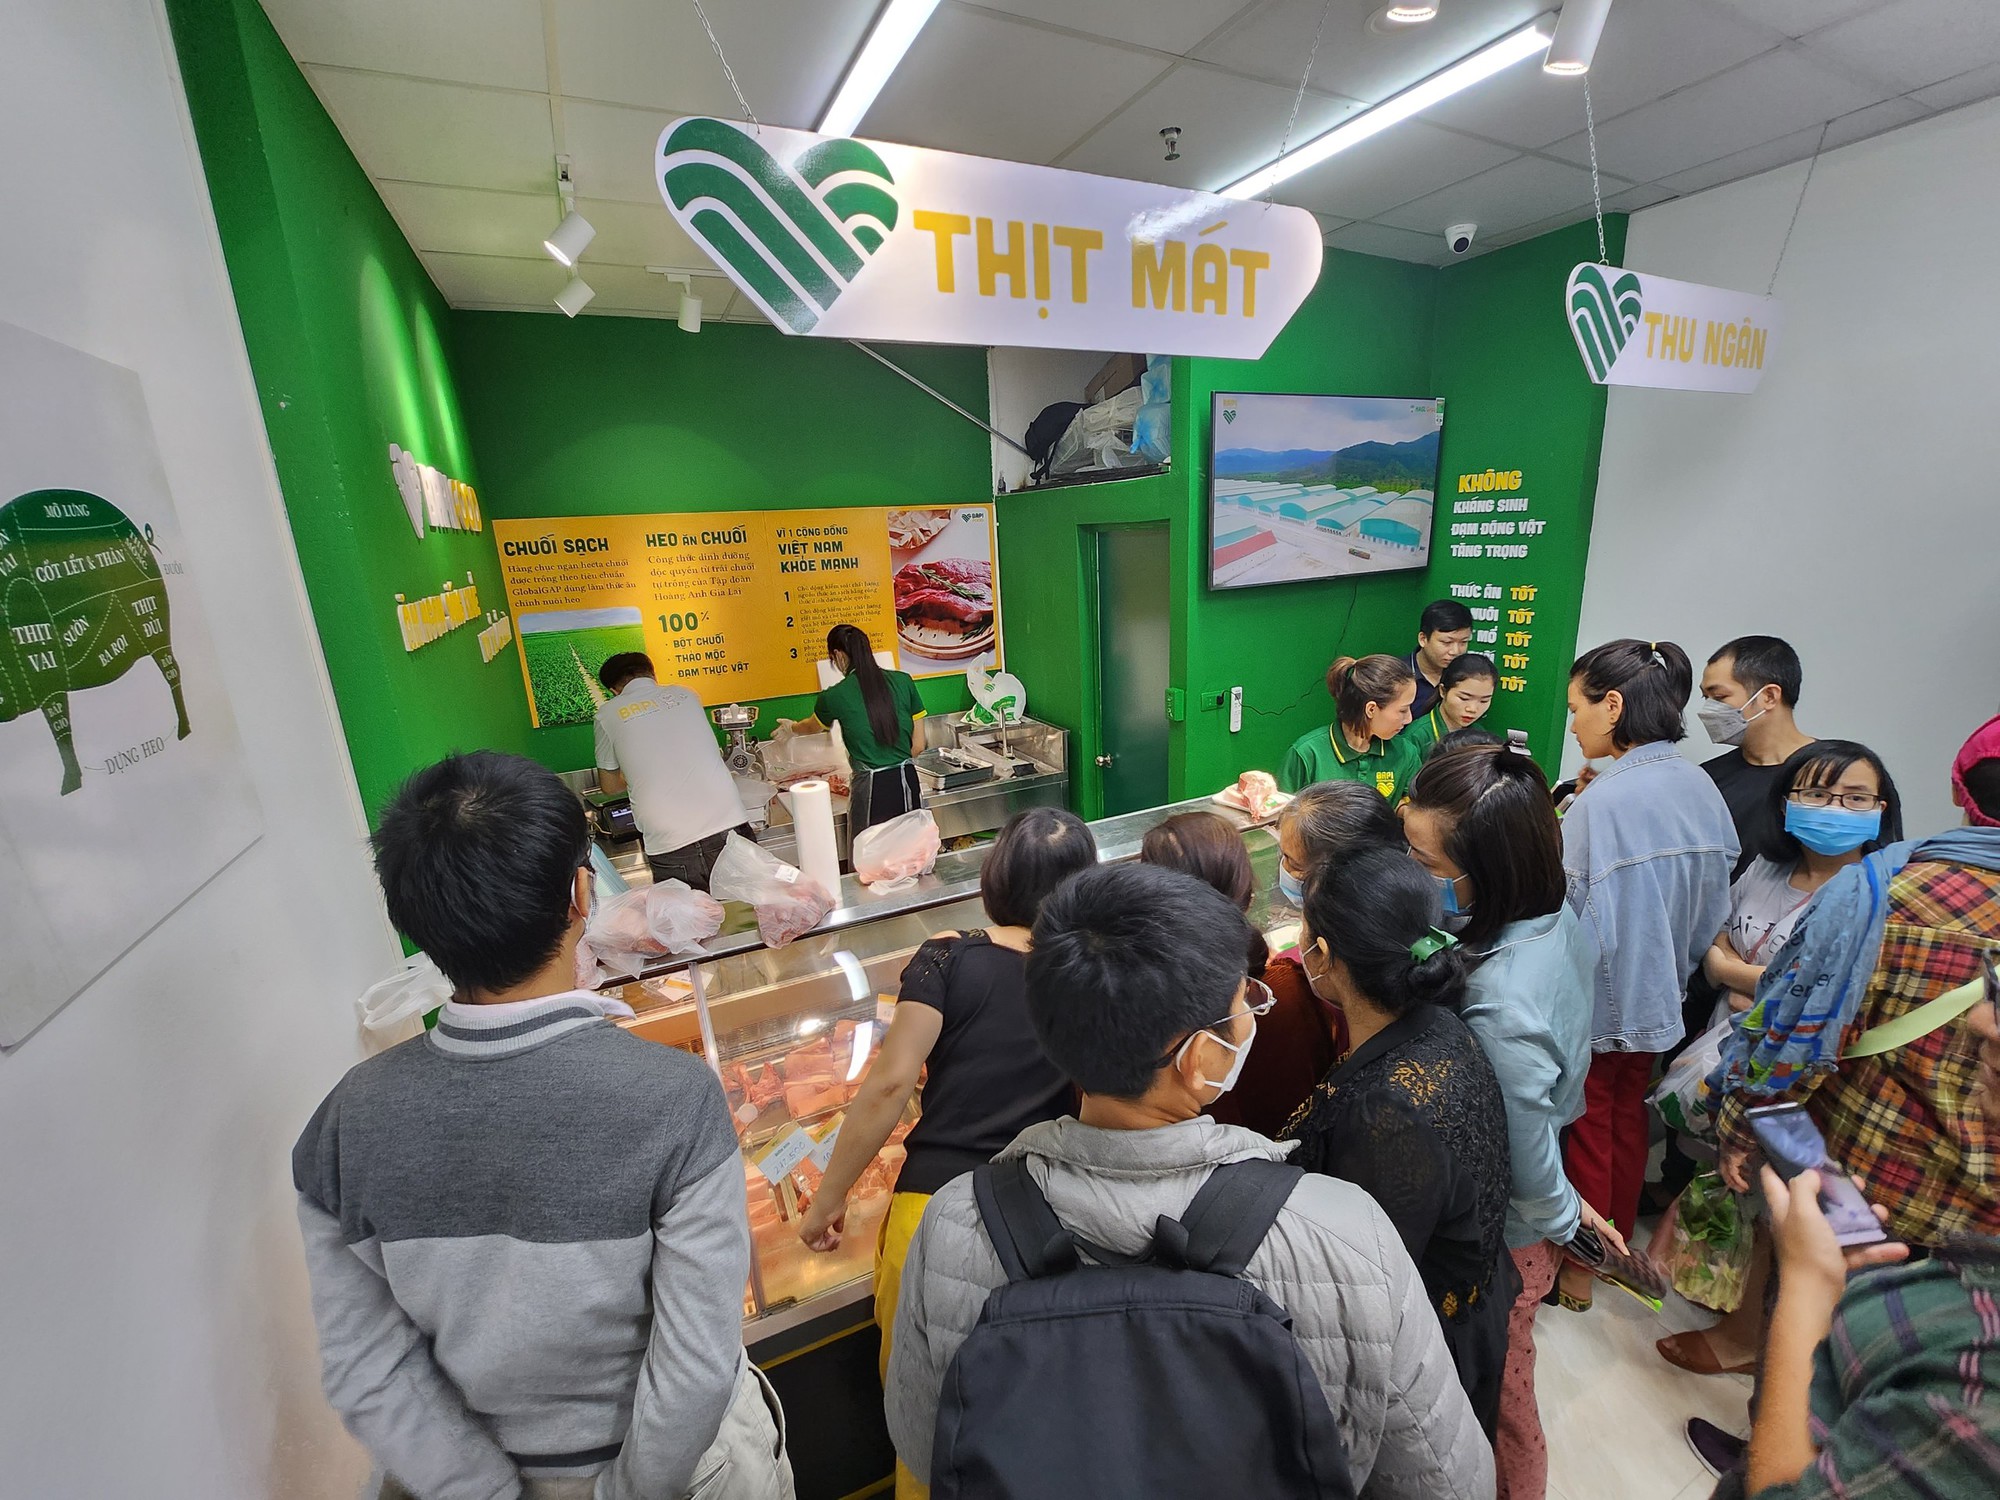 Bầu Đức mở cửa hàng thịt heo ăn chuối tại Hà Nội, chị em tíu tít xếp hàng mua hết veo - Ảnh 4.